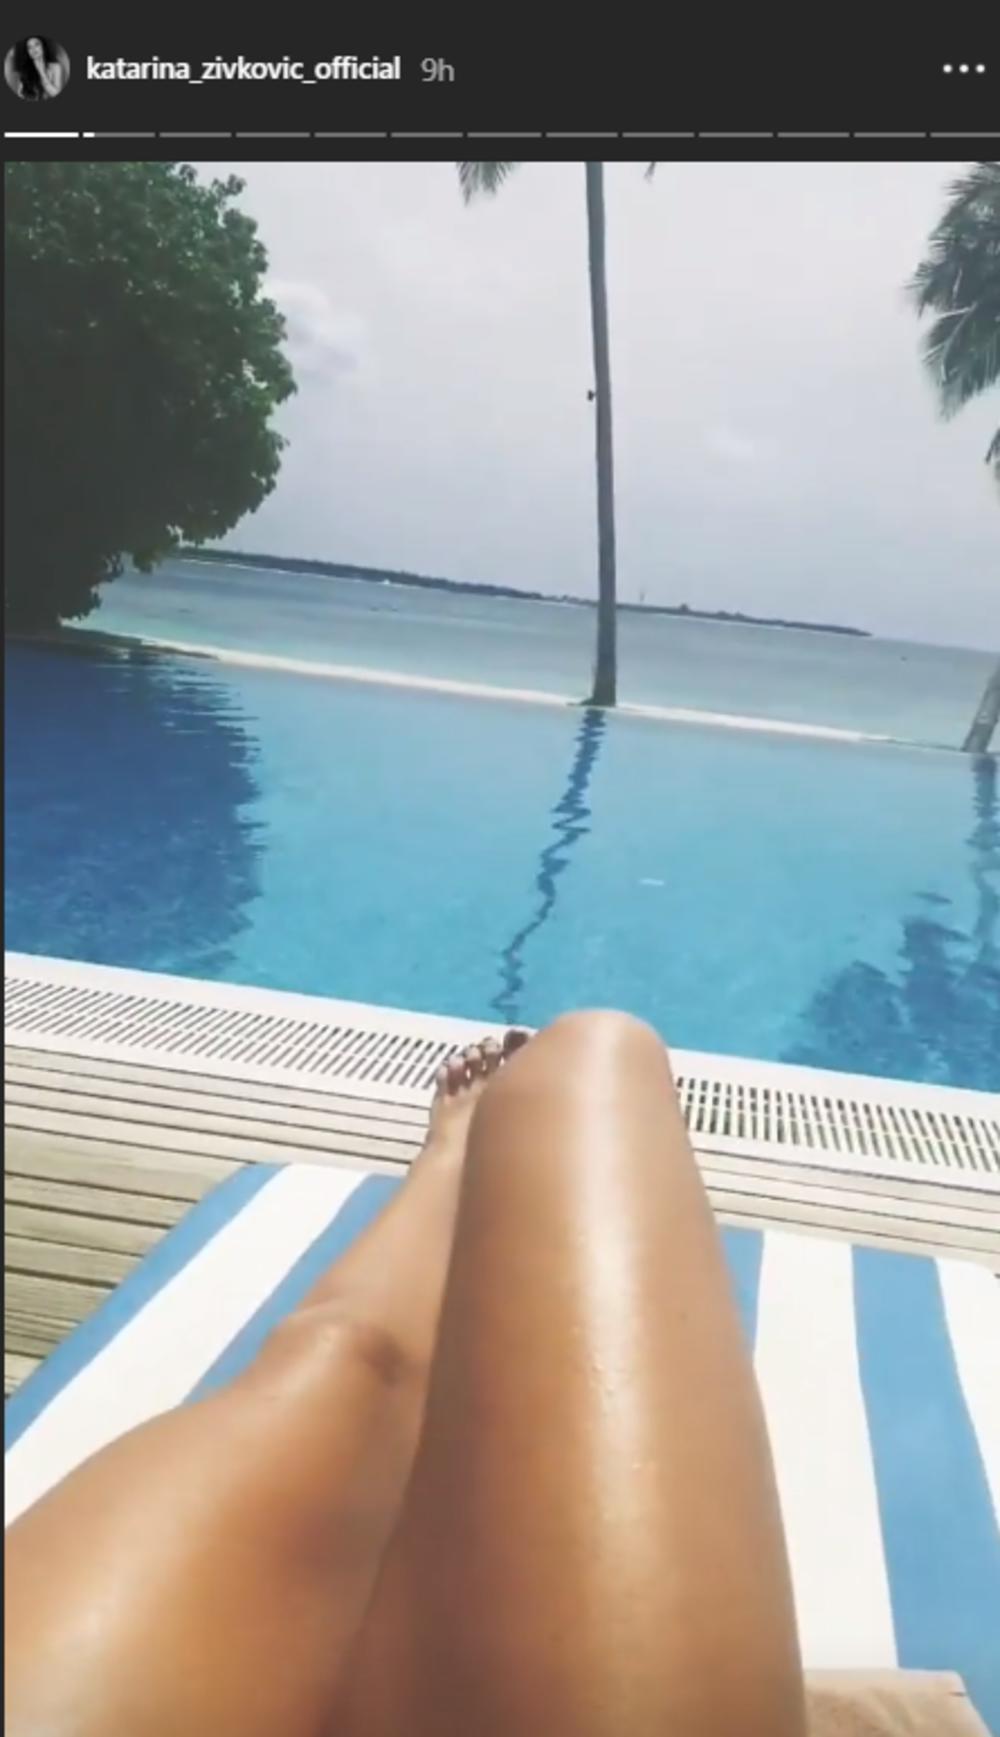 <p>Popularna pevačica otputovala je na Maldive, gde sa prijateljicama uživa u kupanju i sunčanju.</p>